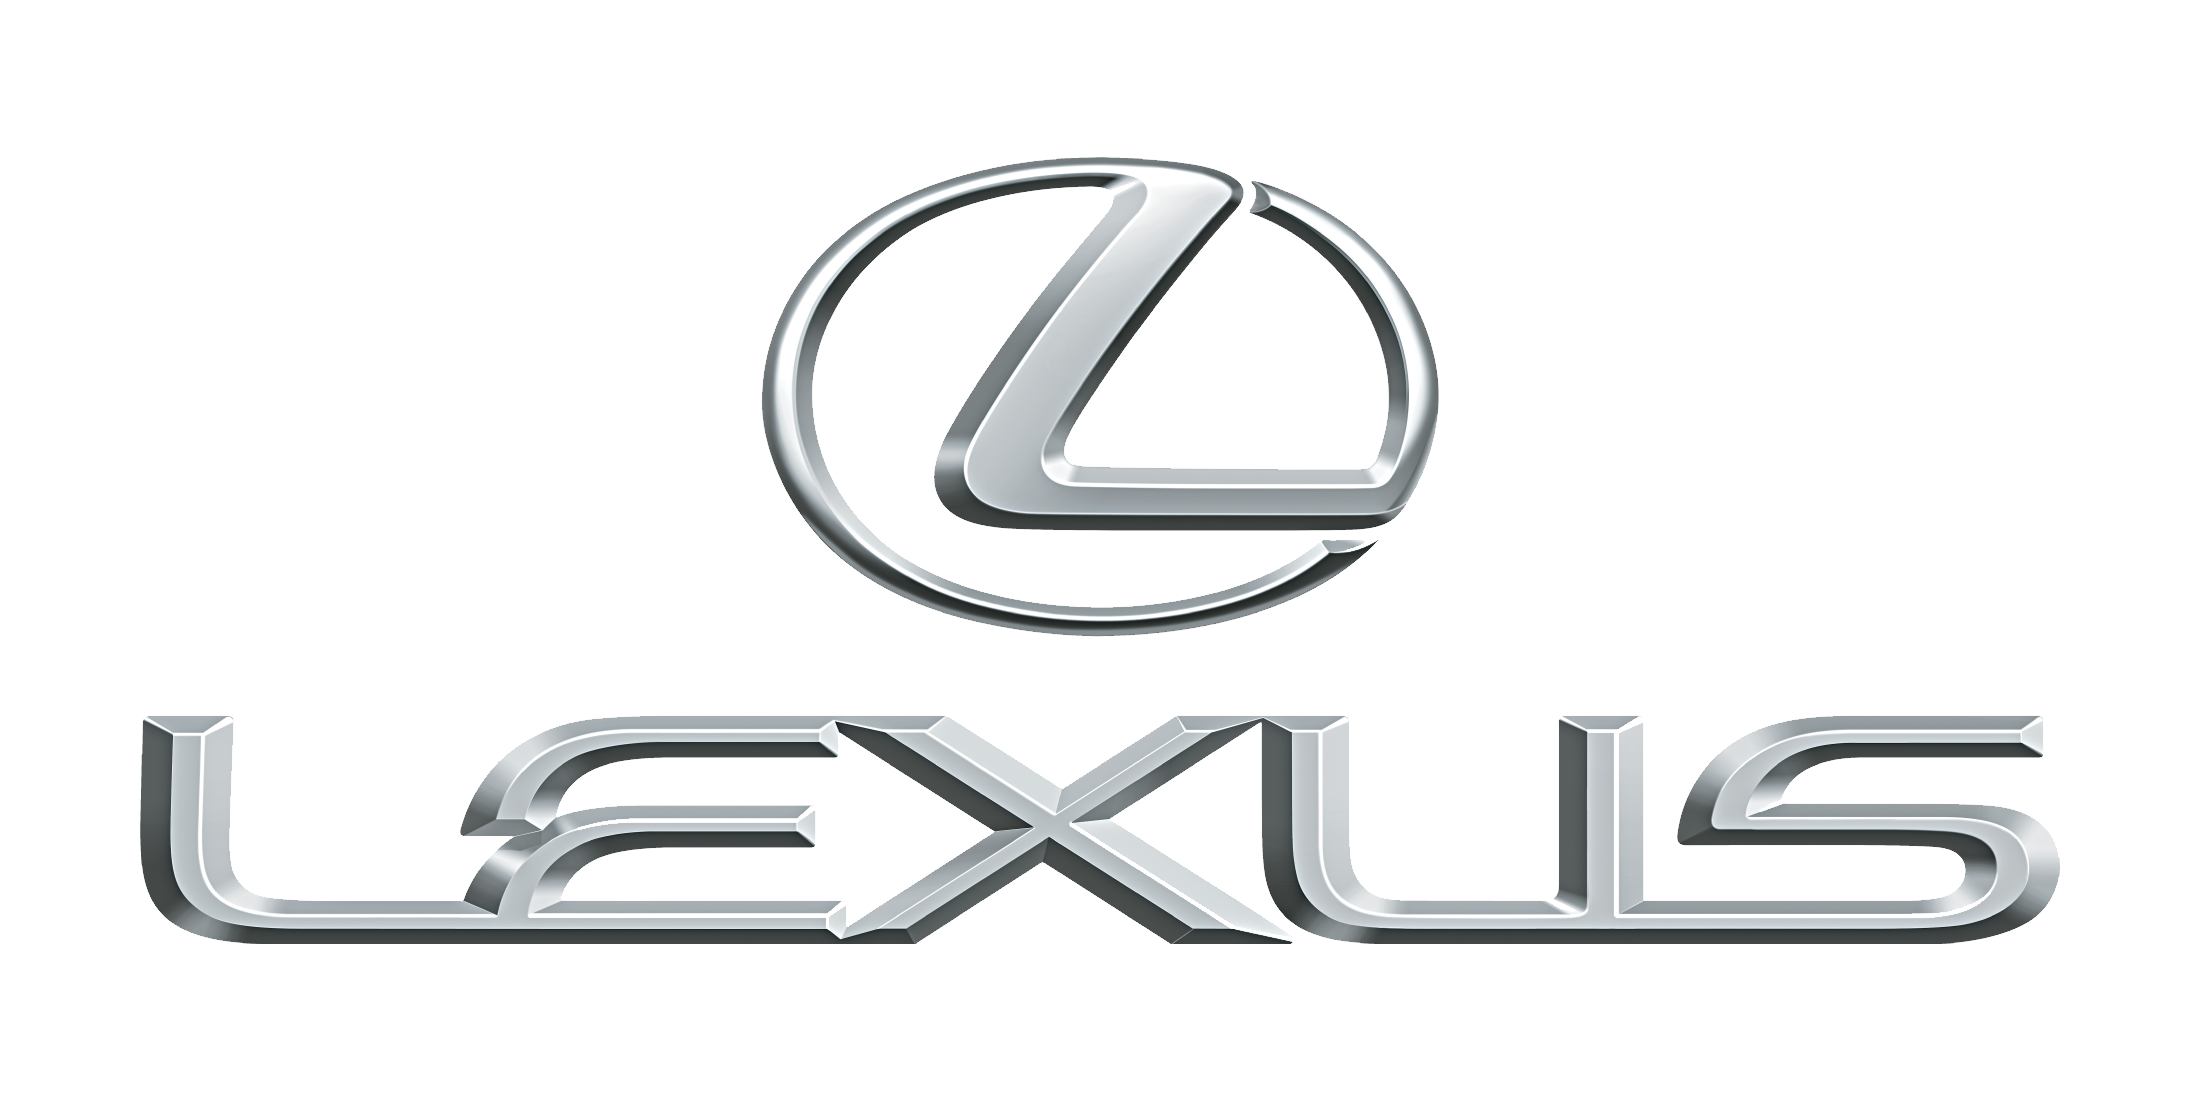 48 Lexus Logo Wallpaper On Wallpapersafari